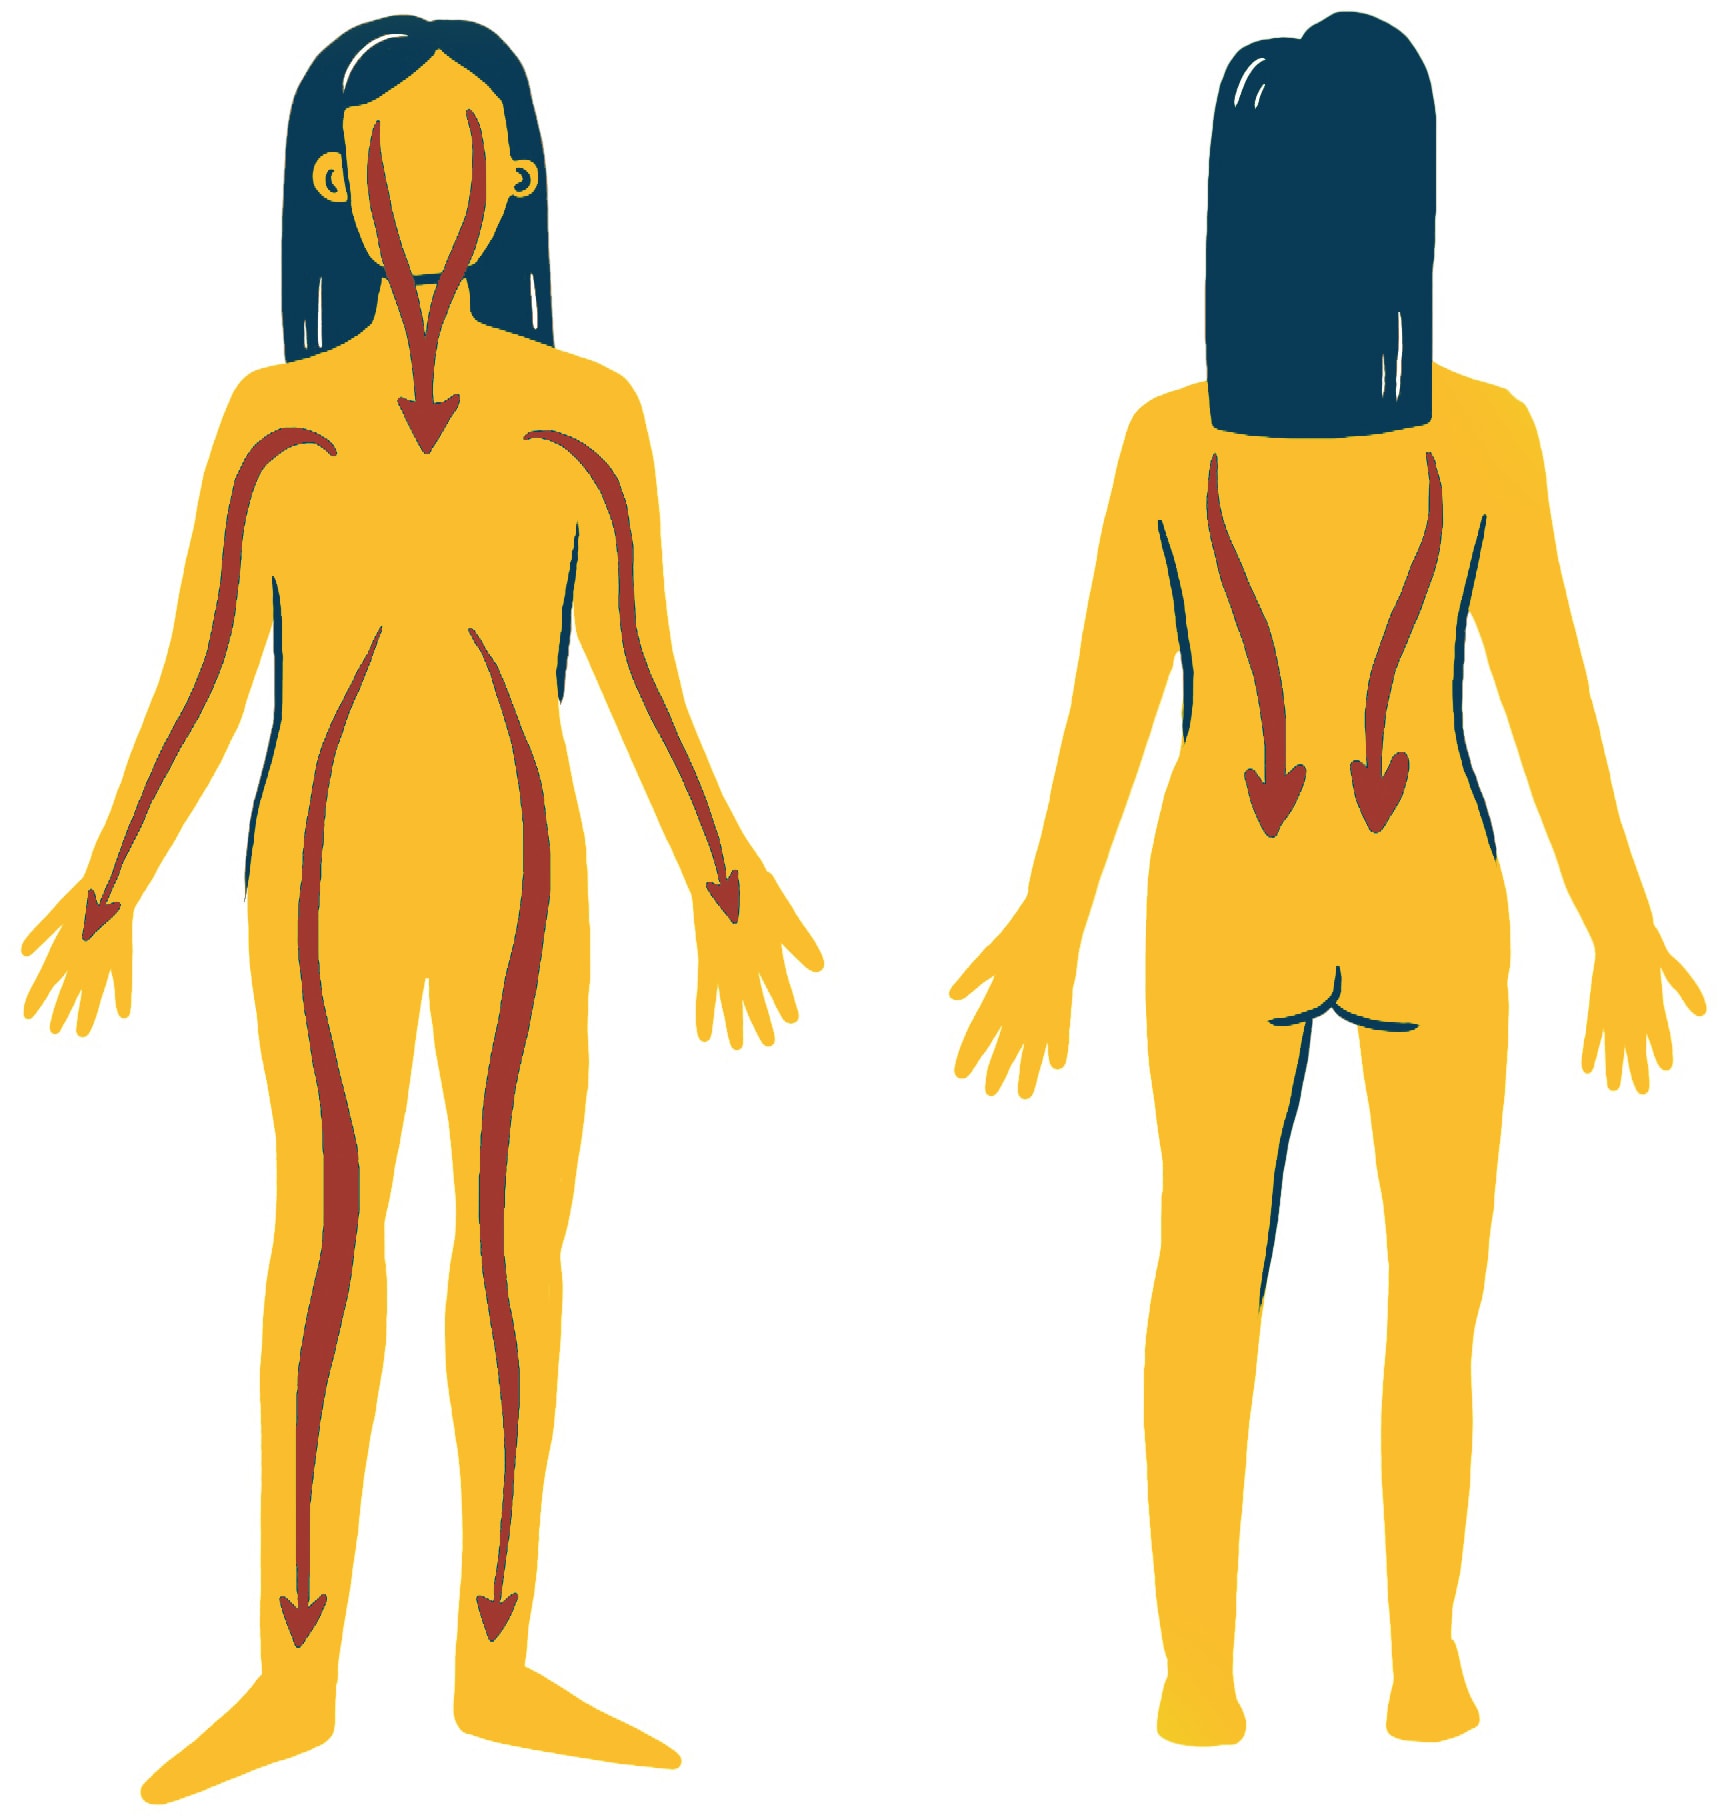 Beruhigende Waschung: Abbildung eines menschlichen Körpers in Vorder- und Rückansicht. Rote Pfeile verlaufen entlang der Körperkontur von Kopf bis Fuß und zeigen eine Abwärtsrichtung an. Die Figur hat dunkles Haar und ist in Gelb mit minimalen Details dargestellt.